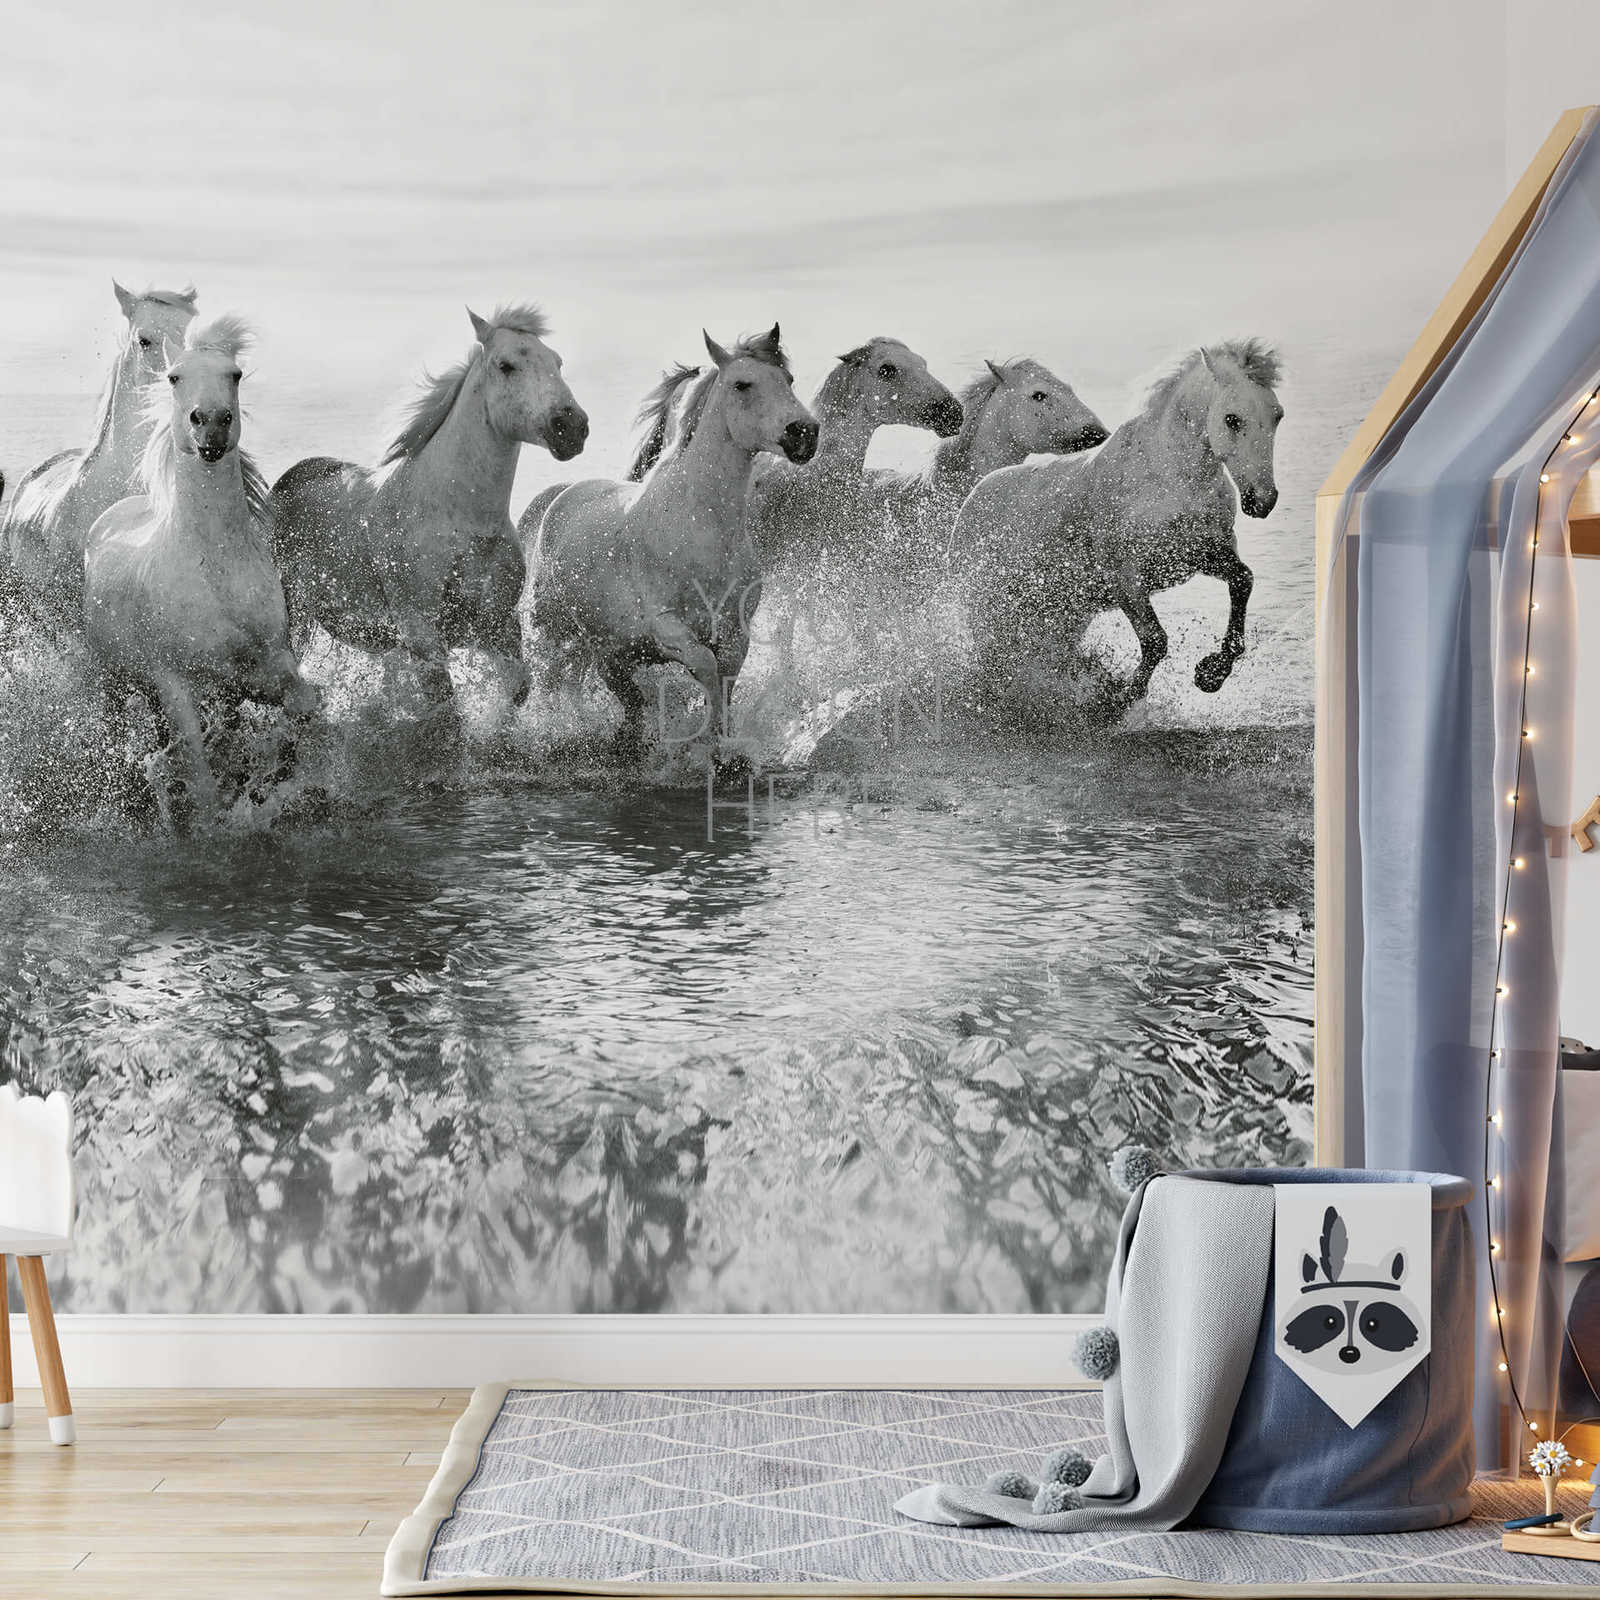             Witte Paarden in Water Behang - Wit, Grijs, Zwart
        